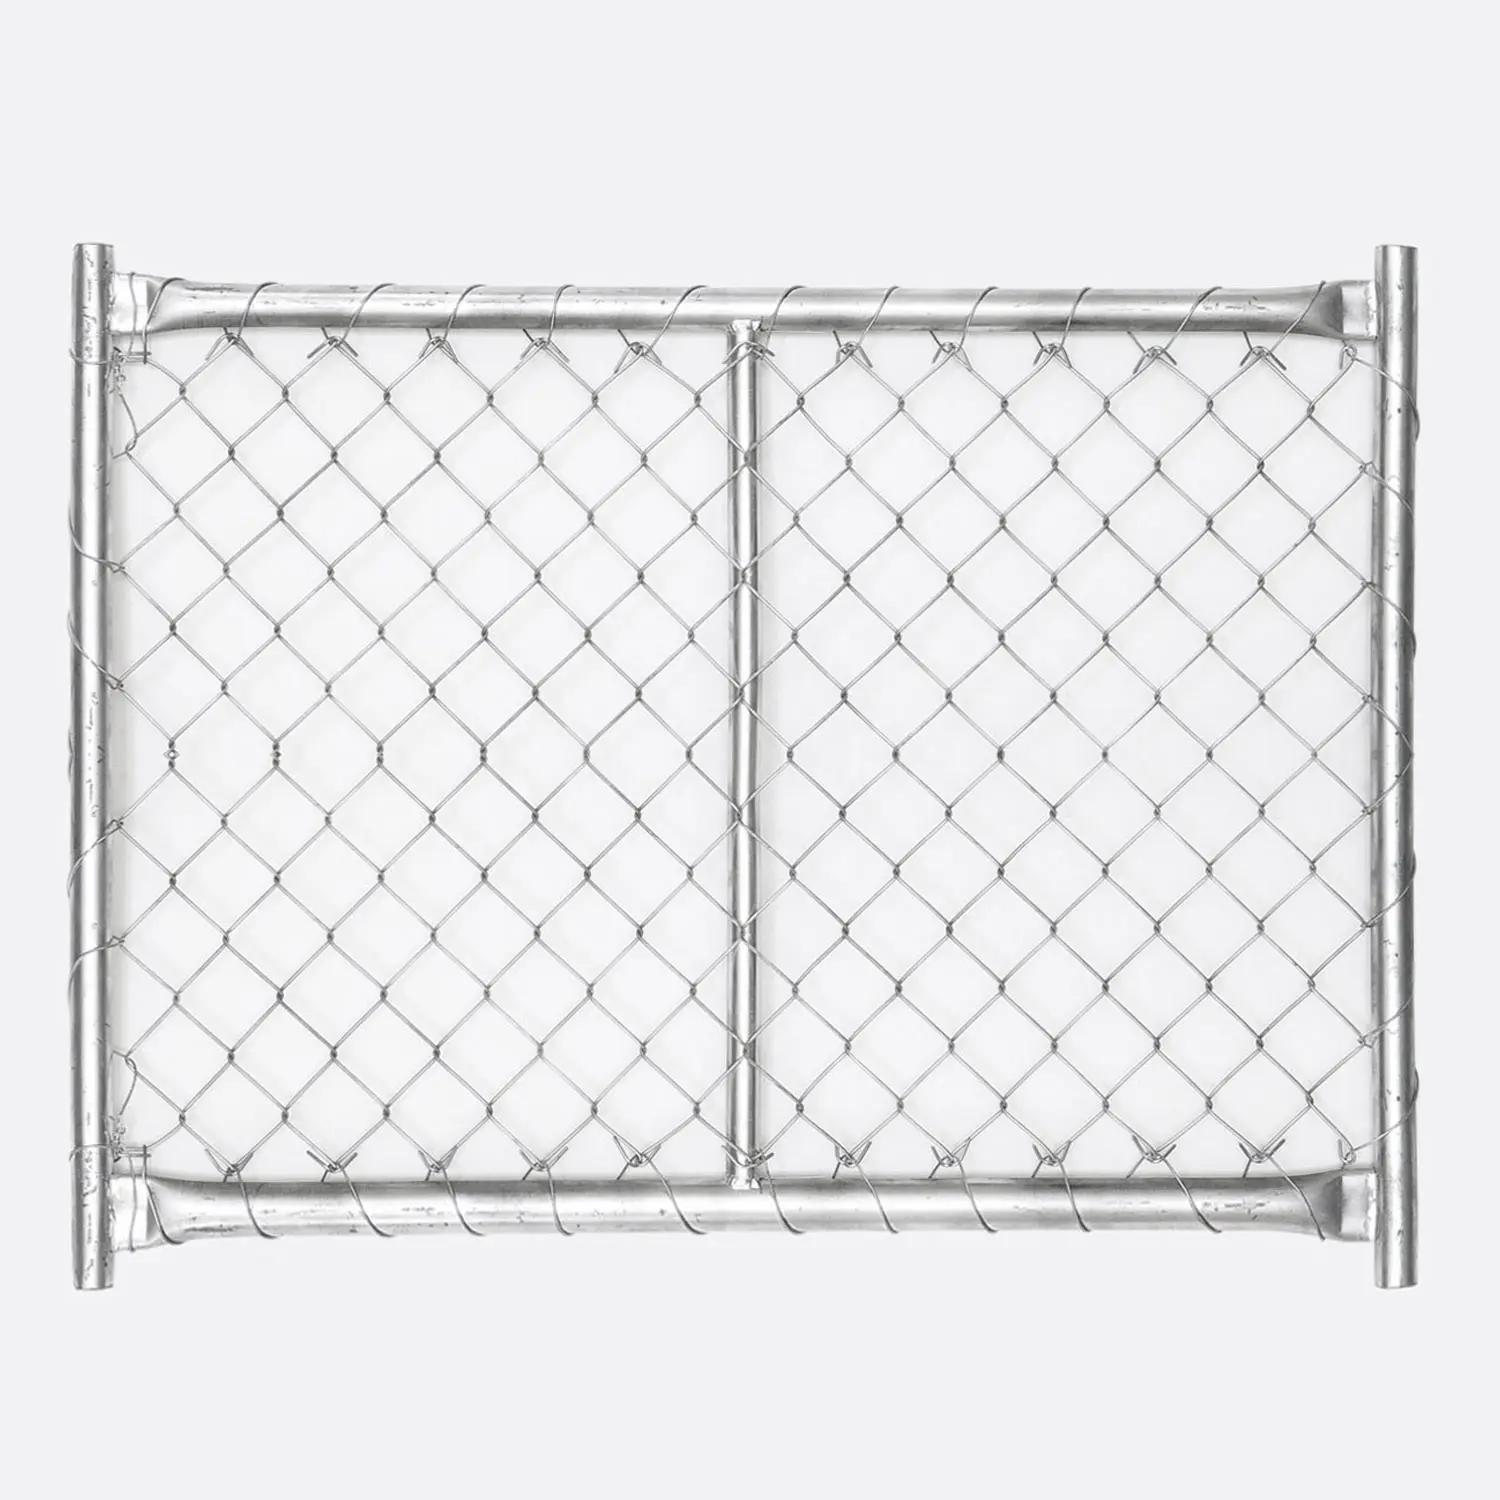 Отличного качества с покрытием из ПВХ оцинкованный 6ft забор из сетки рабицы 36 дюймов загородки ячеистой сети